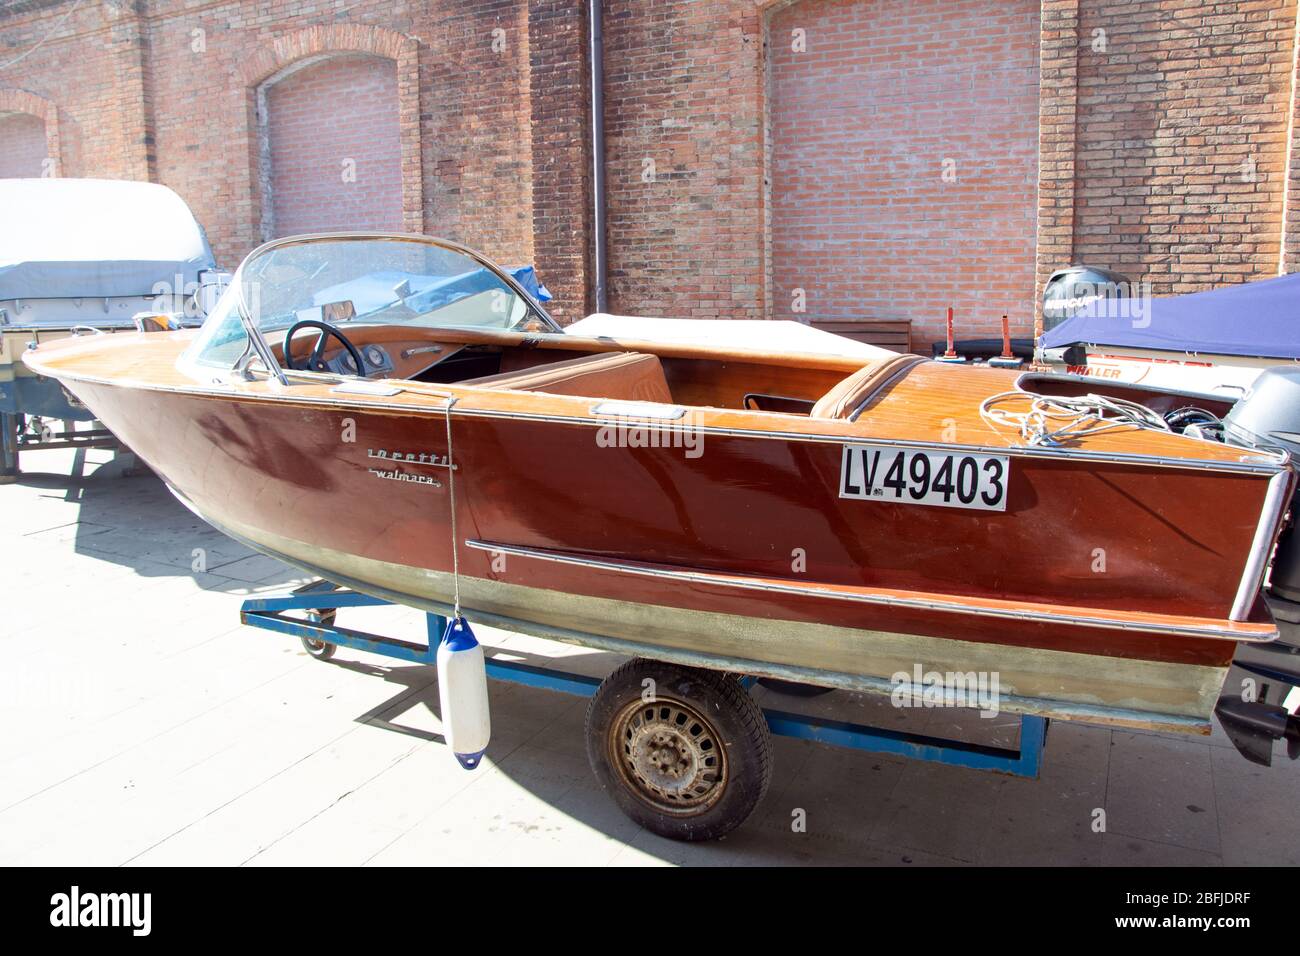 Aquarama Model | la barca a motore dagli anni 50 | Das Motorboot aus den 50ern Foto Stock